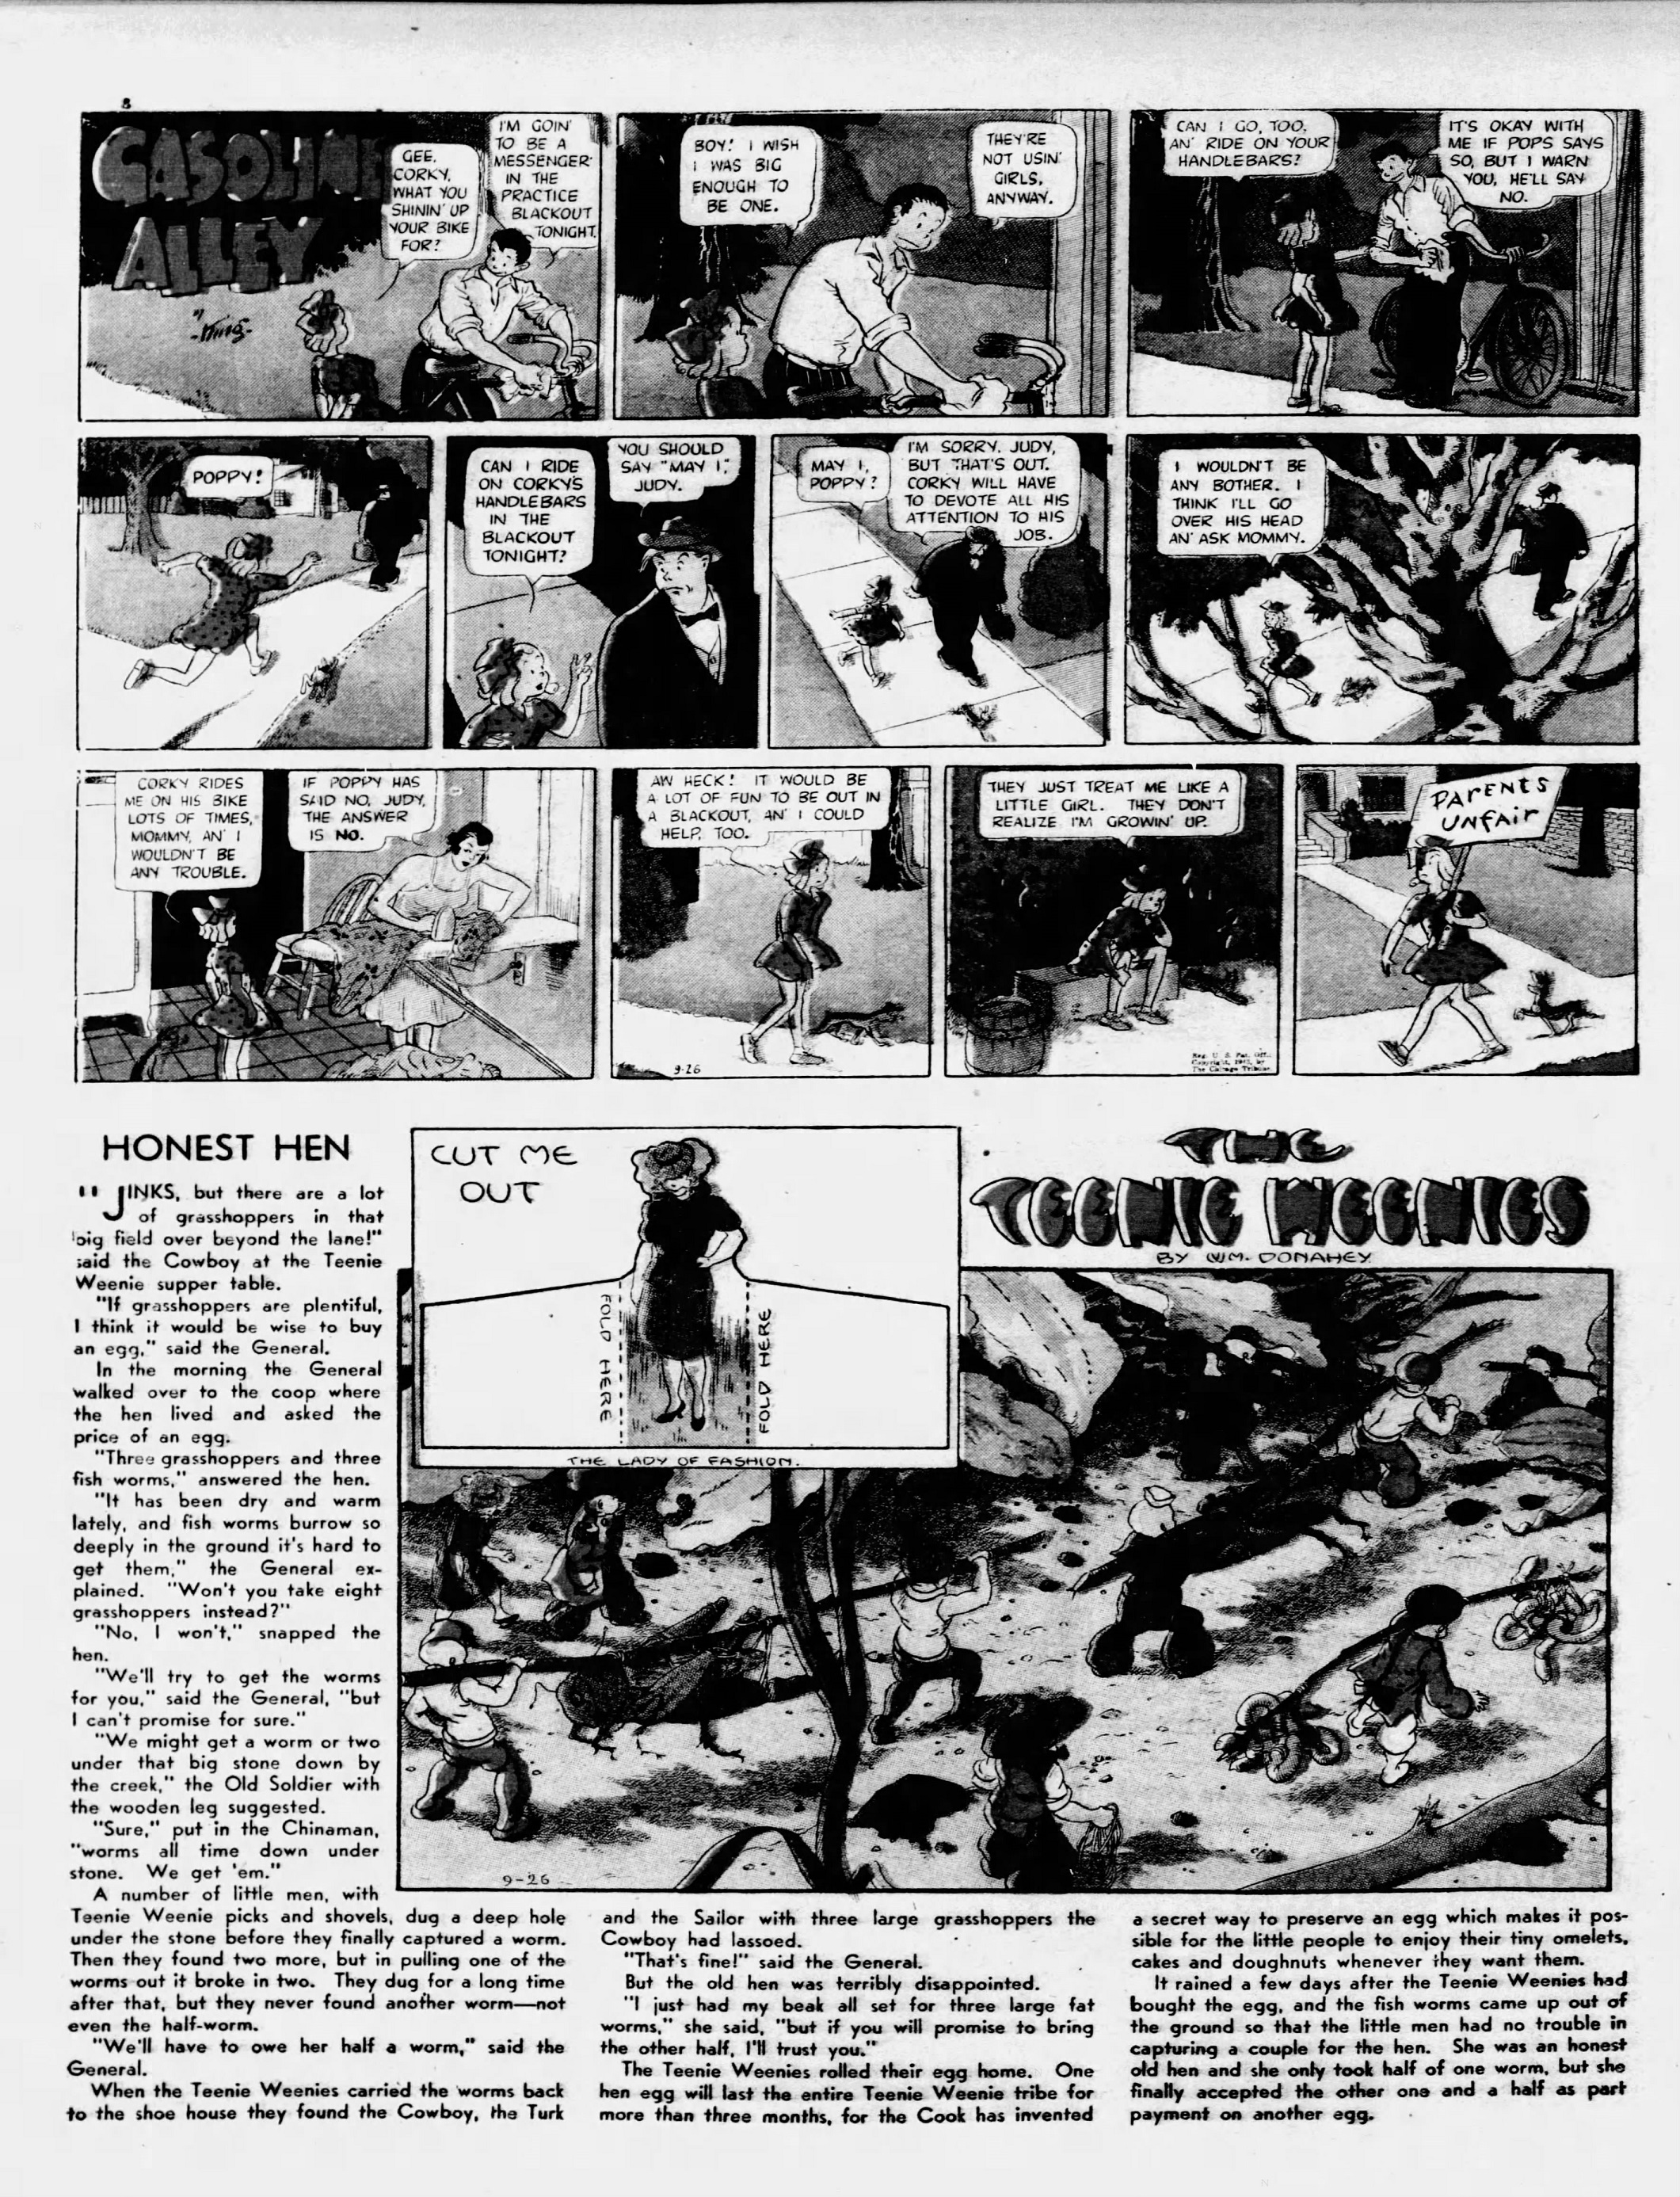 Daily_News_Sun__Sep_26__1943_(6).jpg